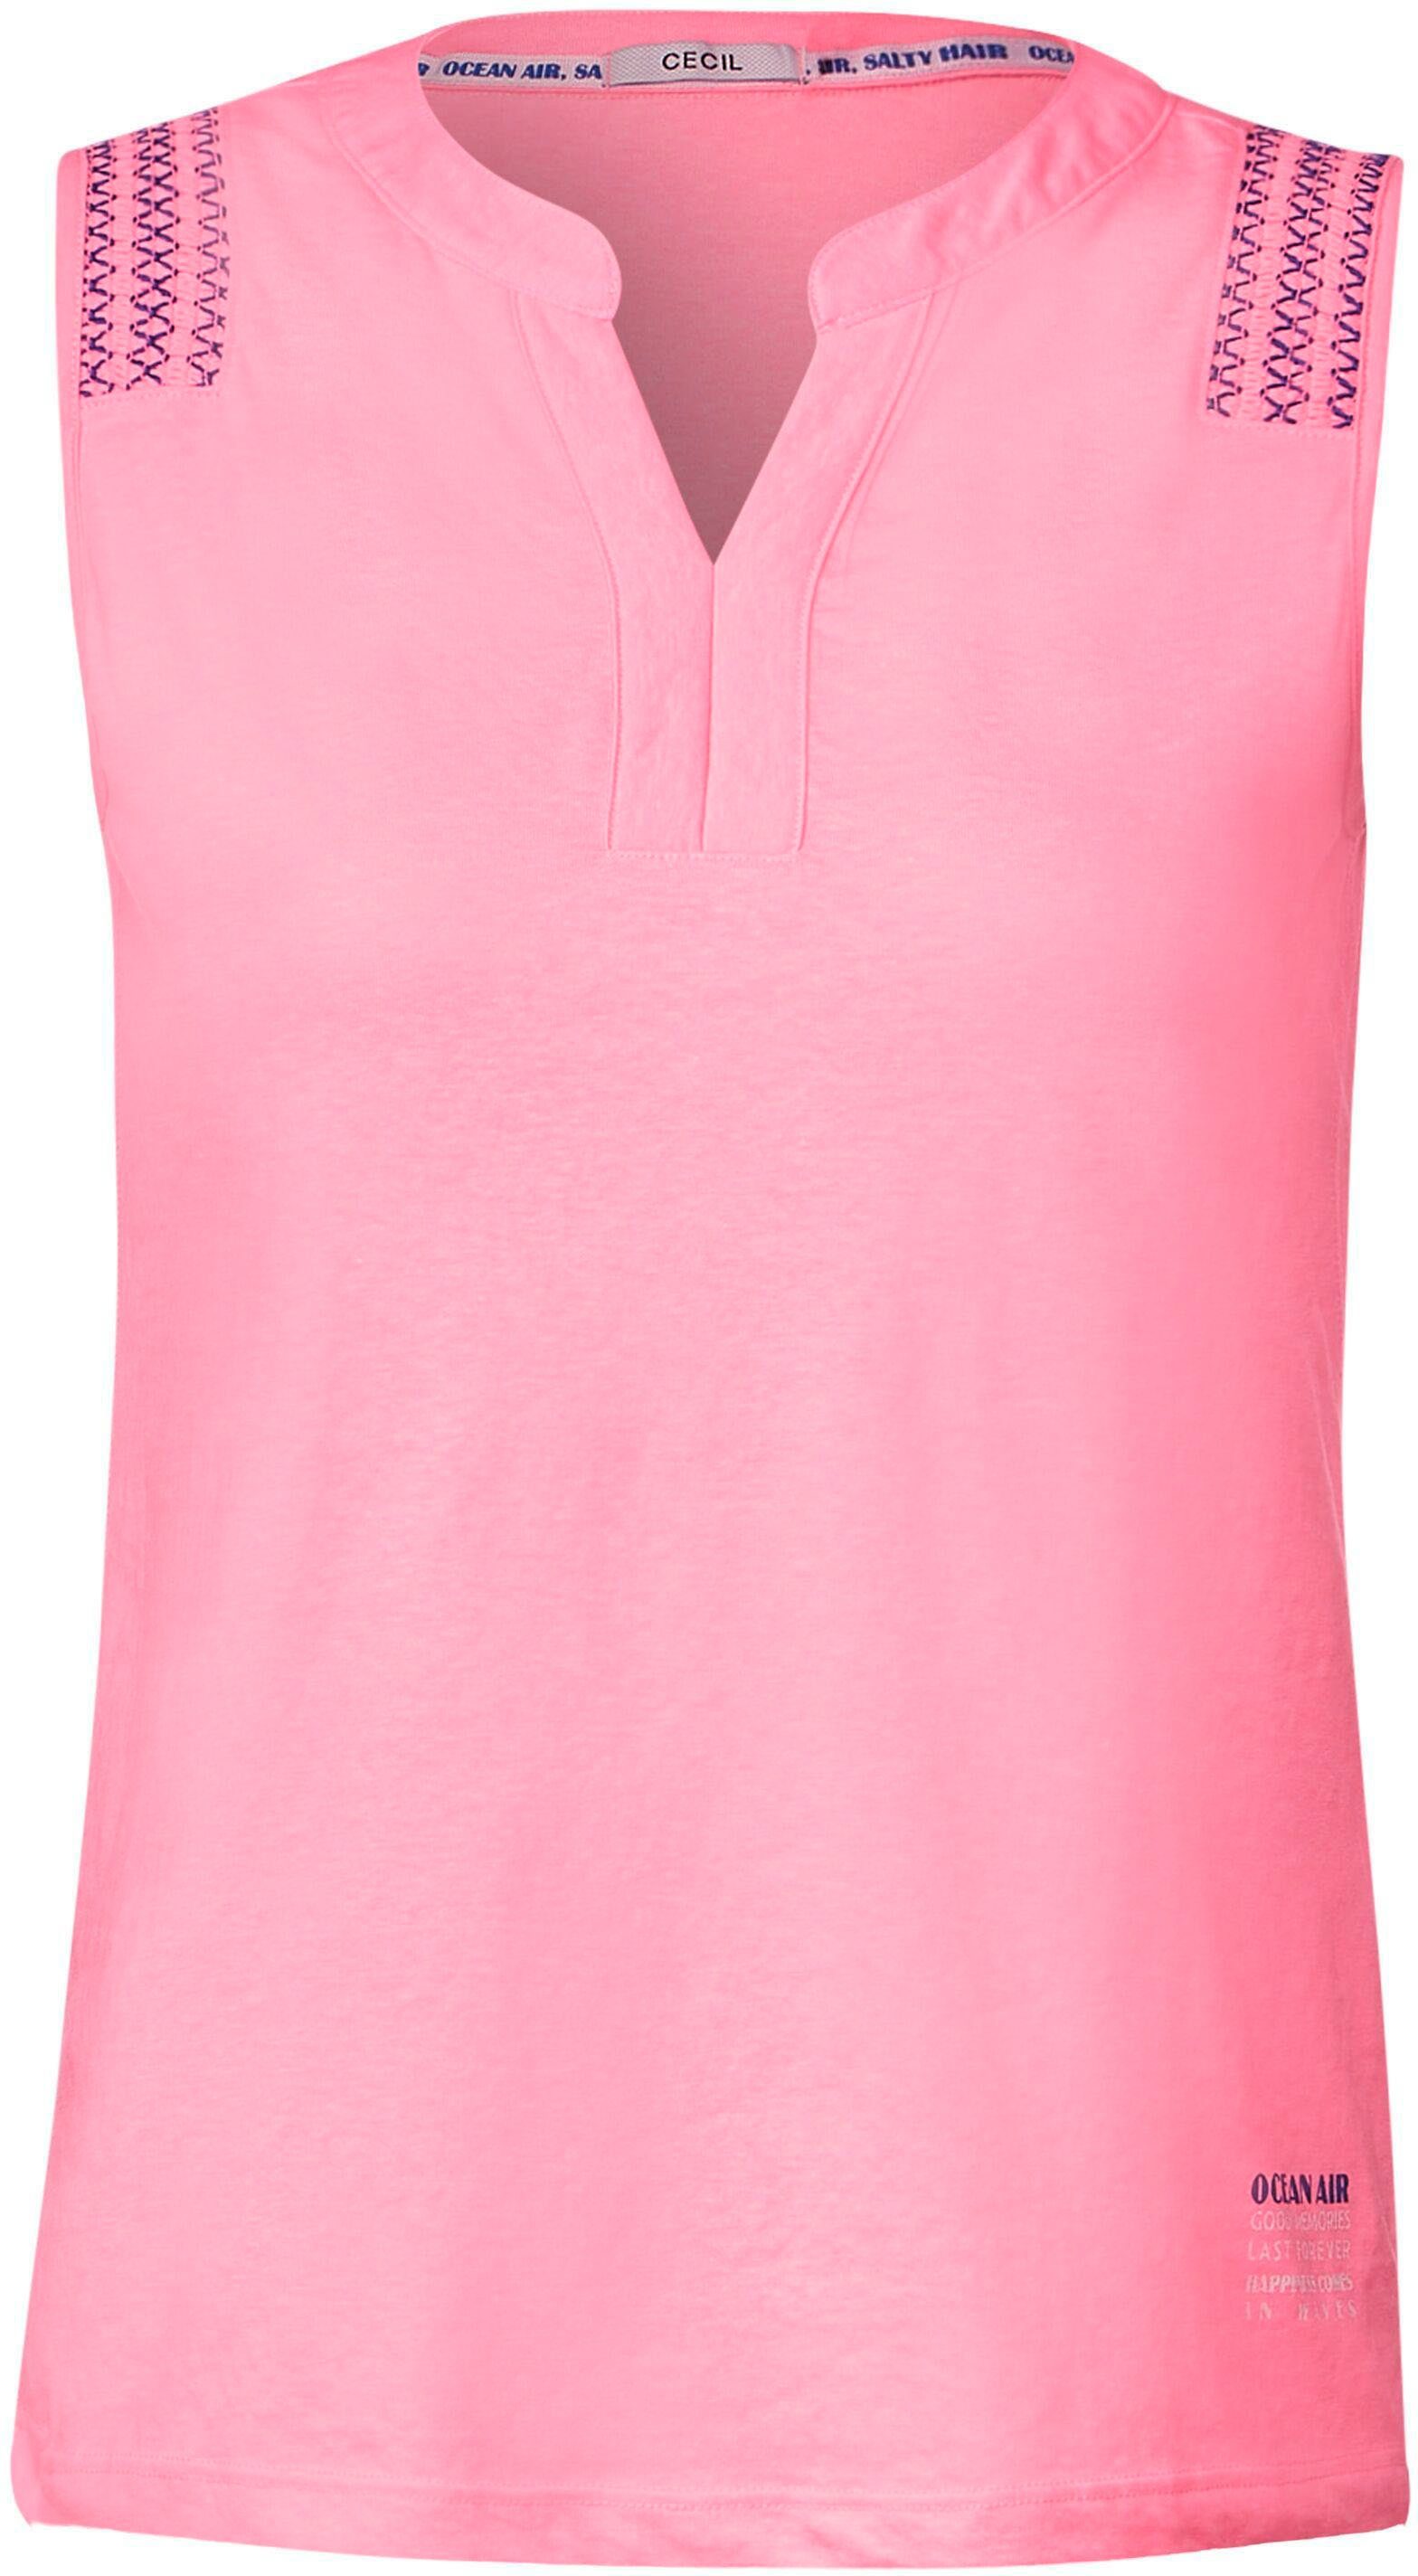 Cecil Shirttop mit soft pink Motto-Druck am Rumpfabschluss